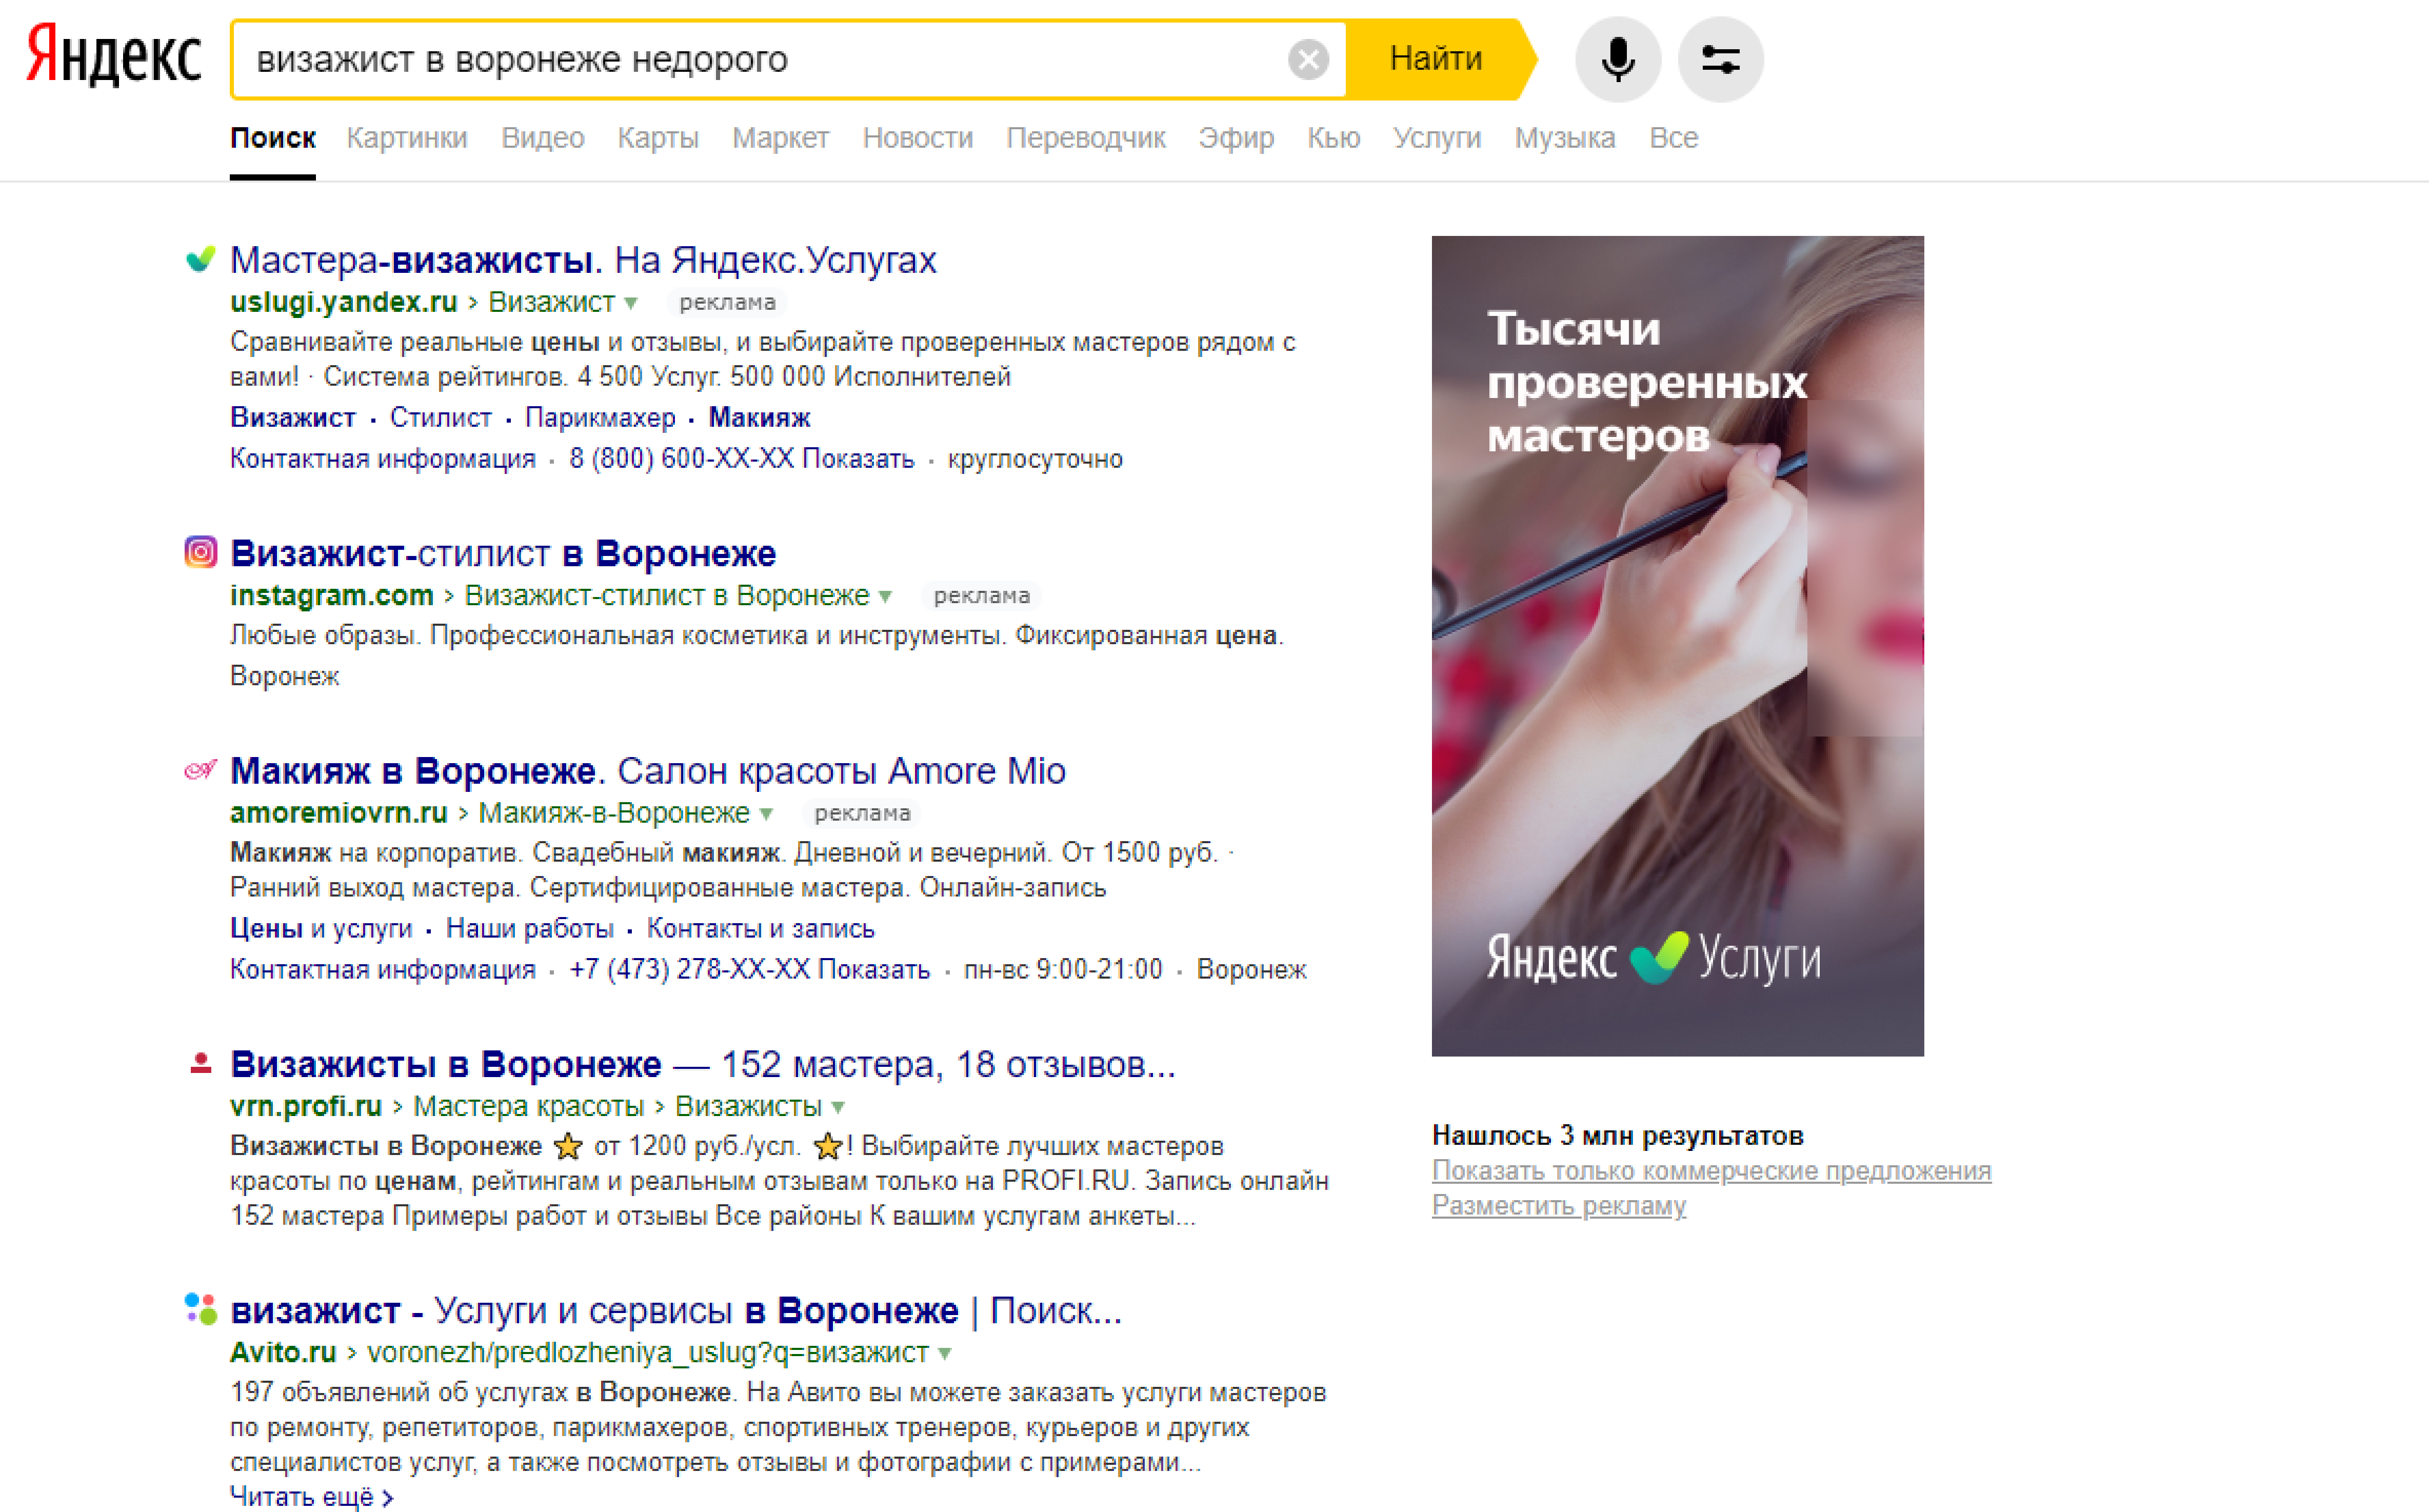 Профиль Яндекс Услуг в Поиске